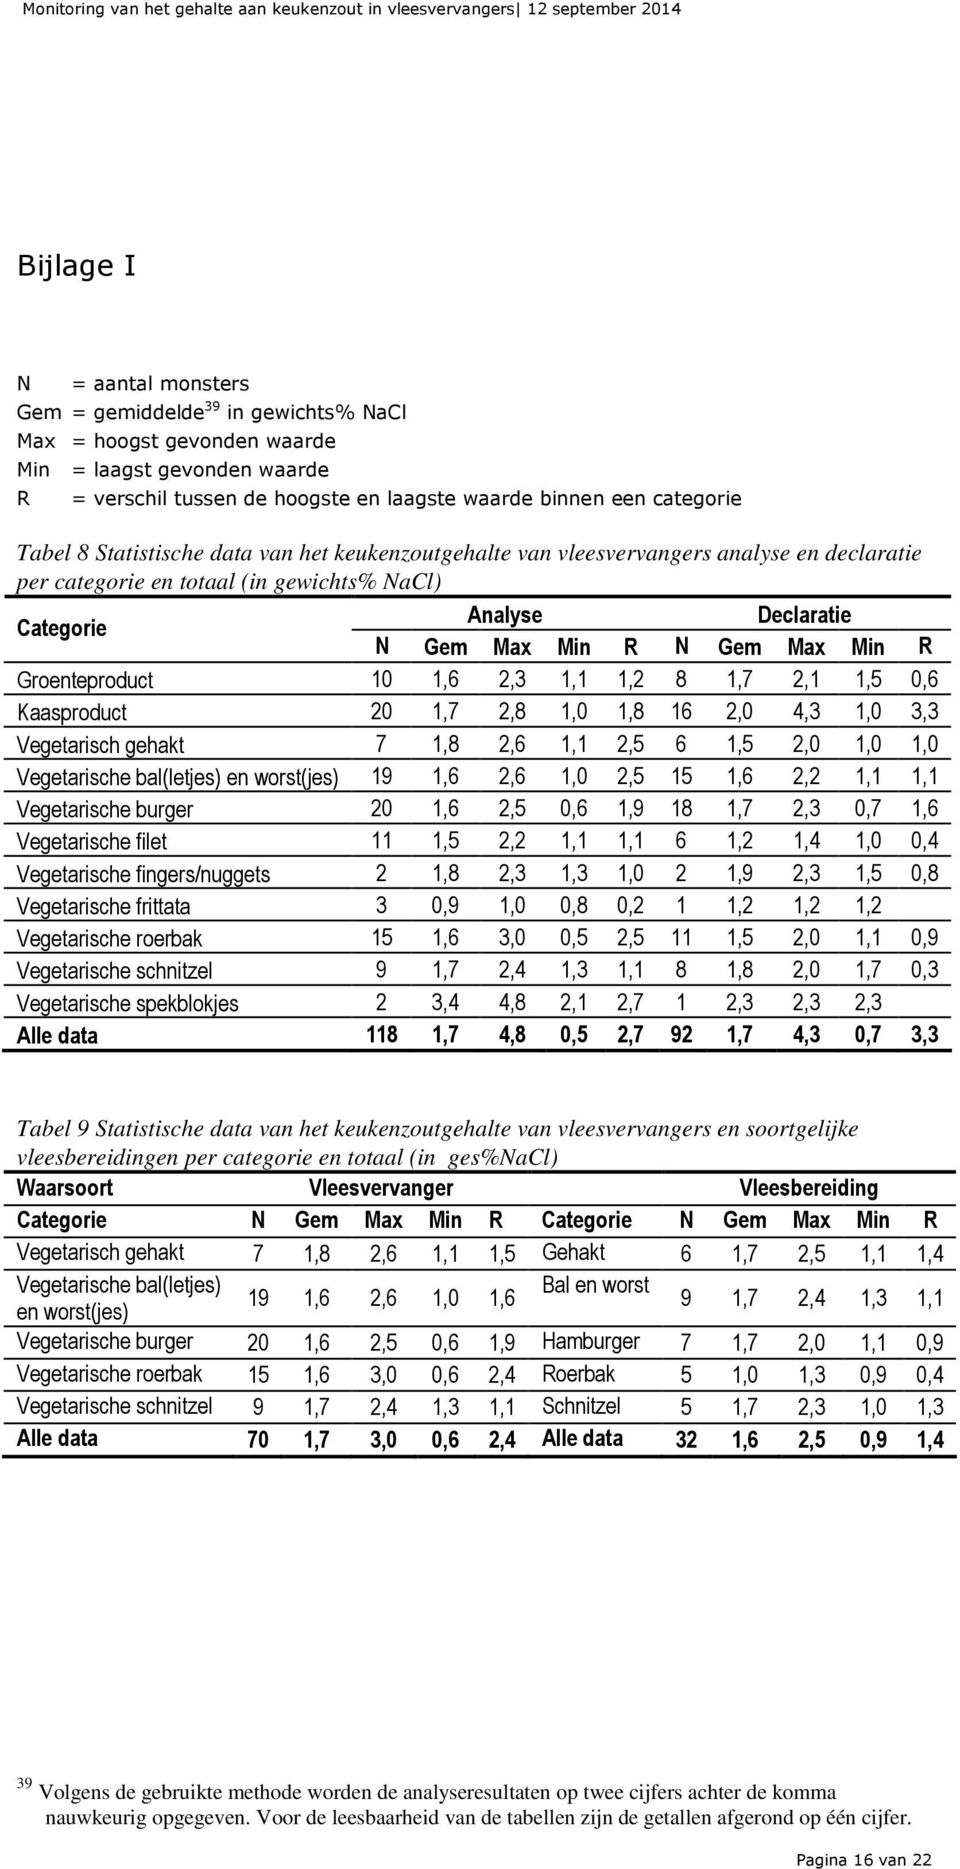 gewichts% NaCl) Categorie Analyse Declaratie N Gem Max Min R N Gem Max Min R Groenteproduct 10 1,6 2,3 1,1 1,2 8 1,7 2,1 1,5 0,6 Kaasproduct 20 1,7 2,8 1,0 1,8 16 2,0 4,3 1,0 3,3 Vegetarisch gehakt 7